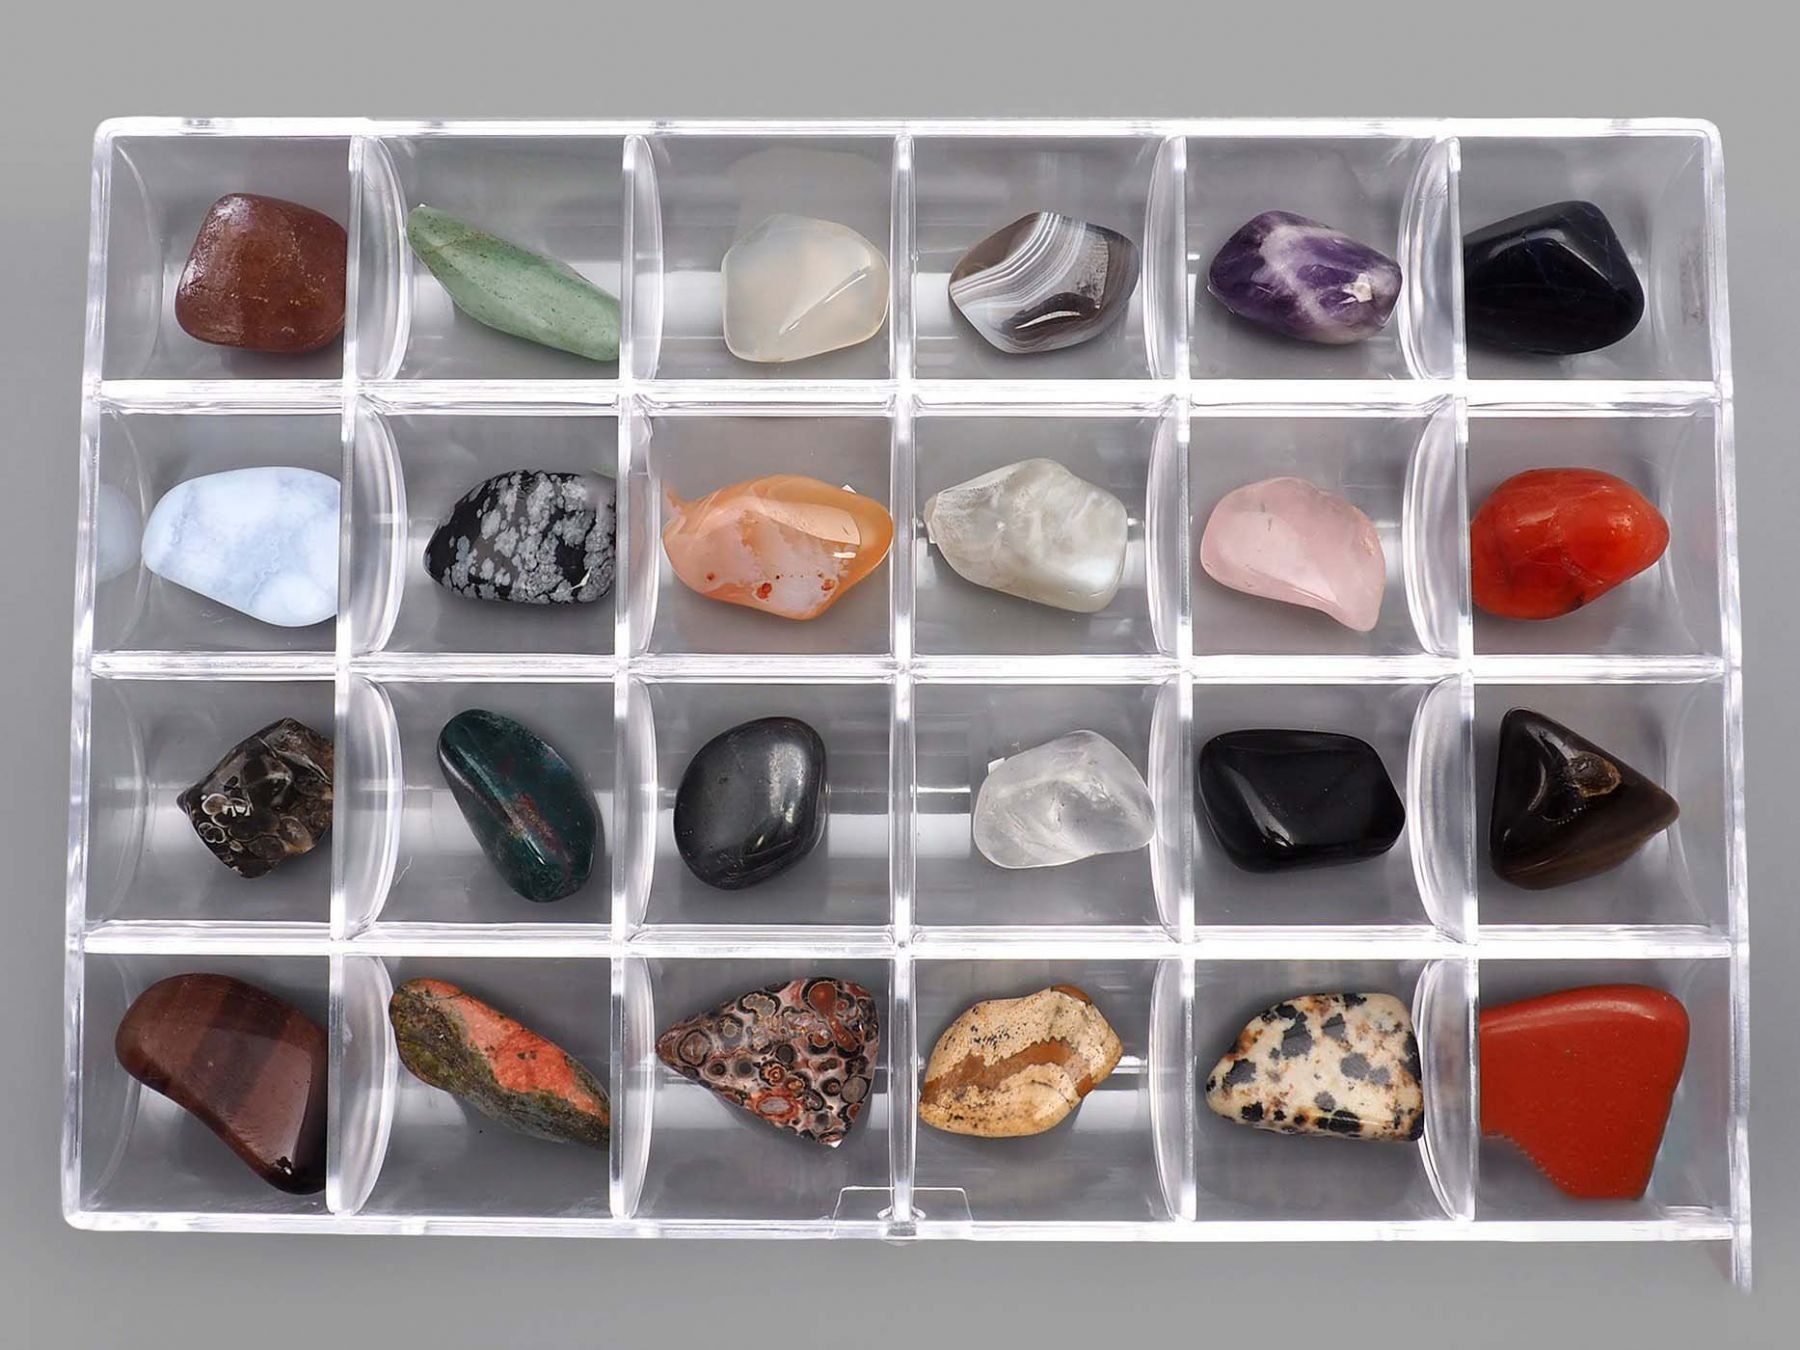 Https stone ru. Коллекция камней и минералов №2 (1-1,5 см). Набор минералов Worldwide Gemstones 35 kinds. Минералы Самоцветы полудрагоценные камни. Коллекция минералы и горные породы 49 видов.